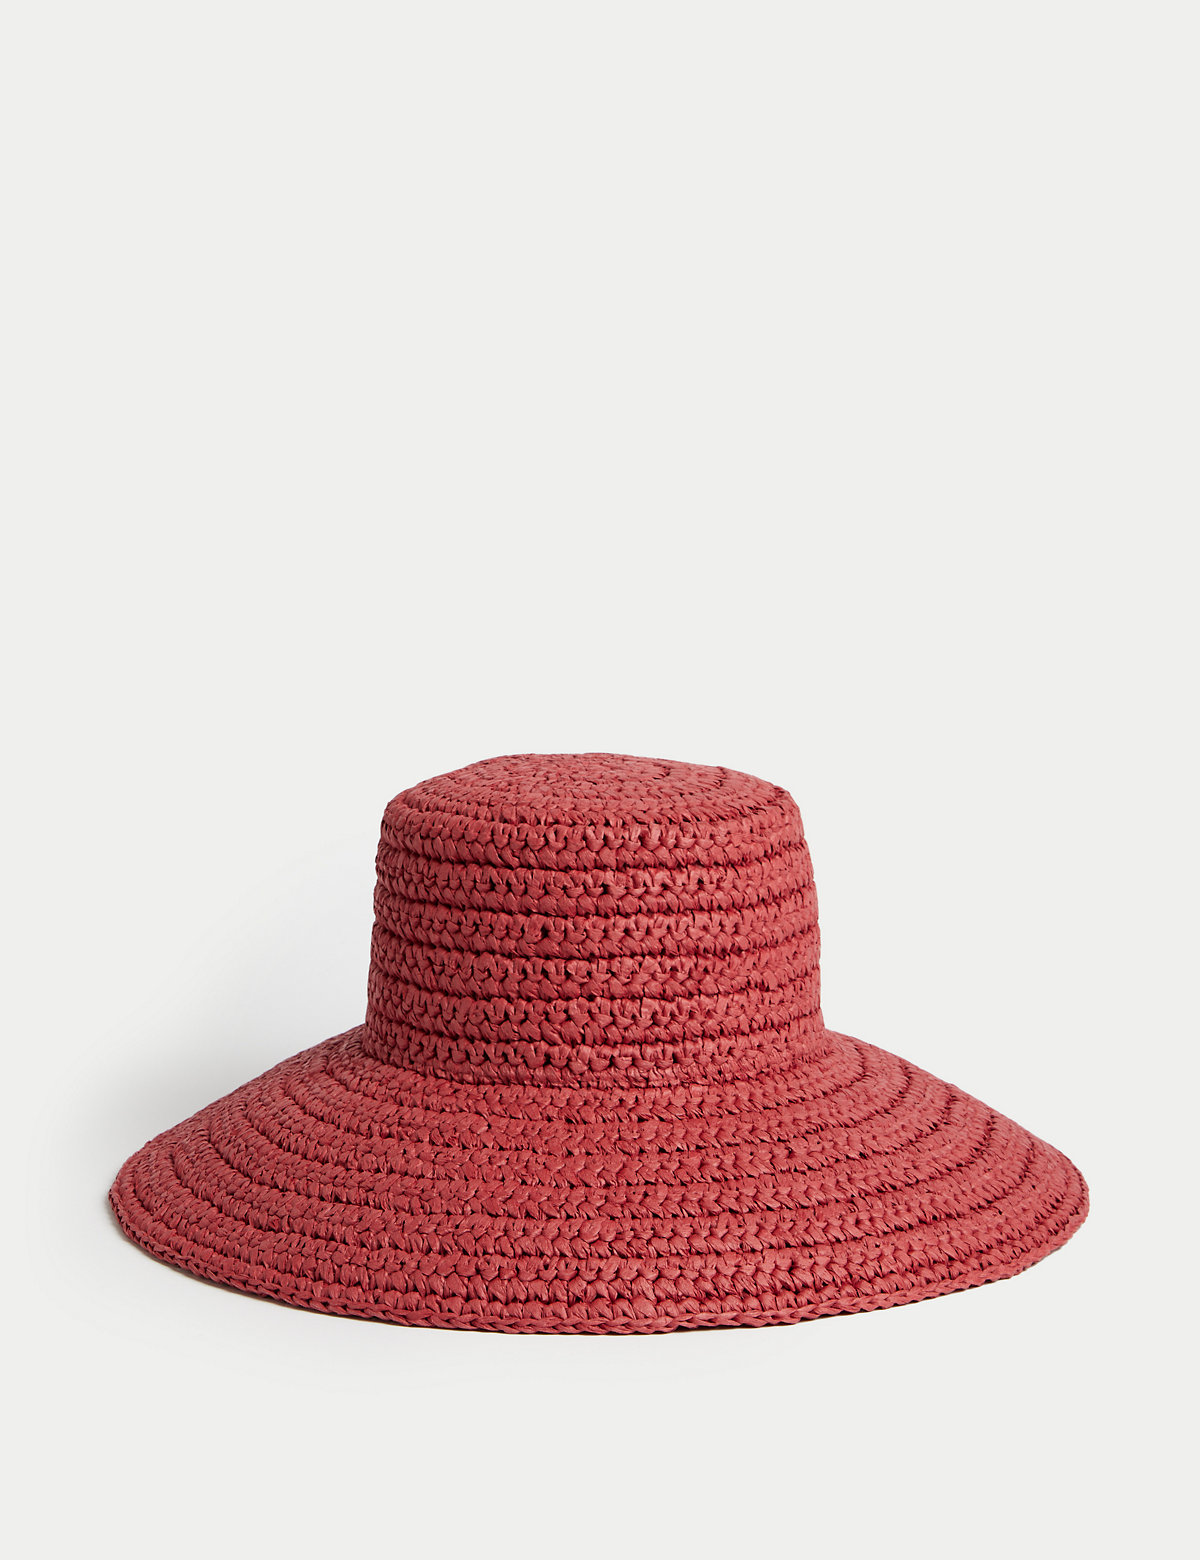 

Marks & Spencer Straw Wide Brim Hat (FEMALE, SIENNA, S-M)